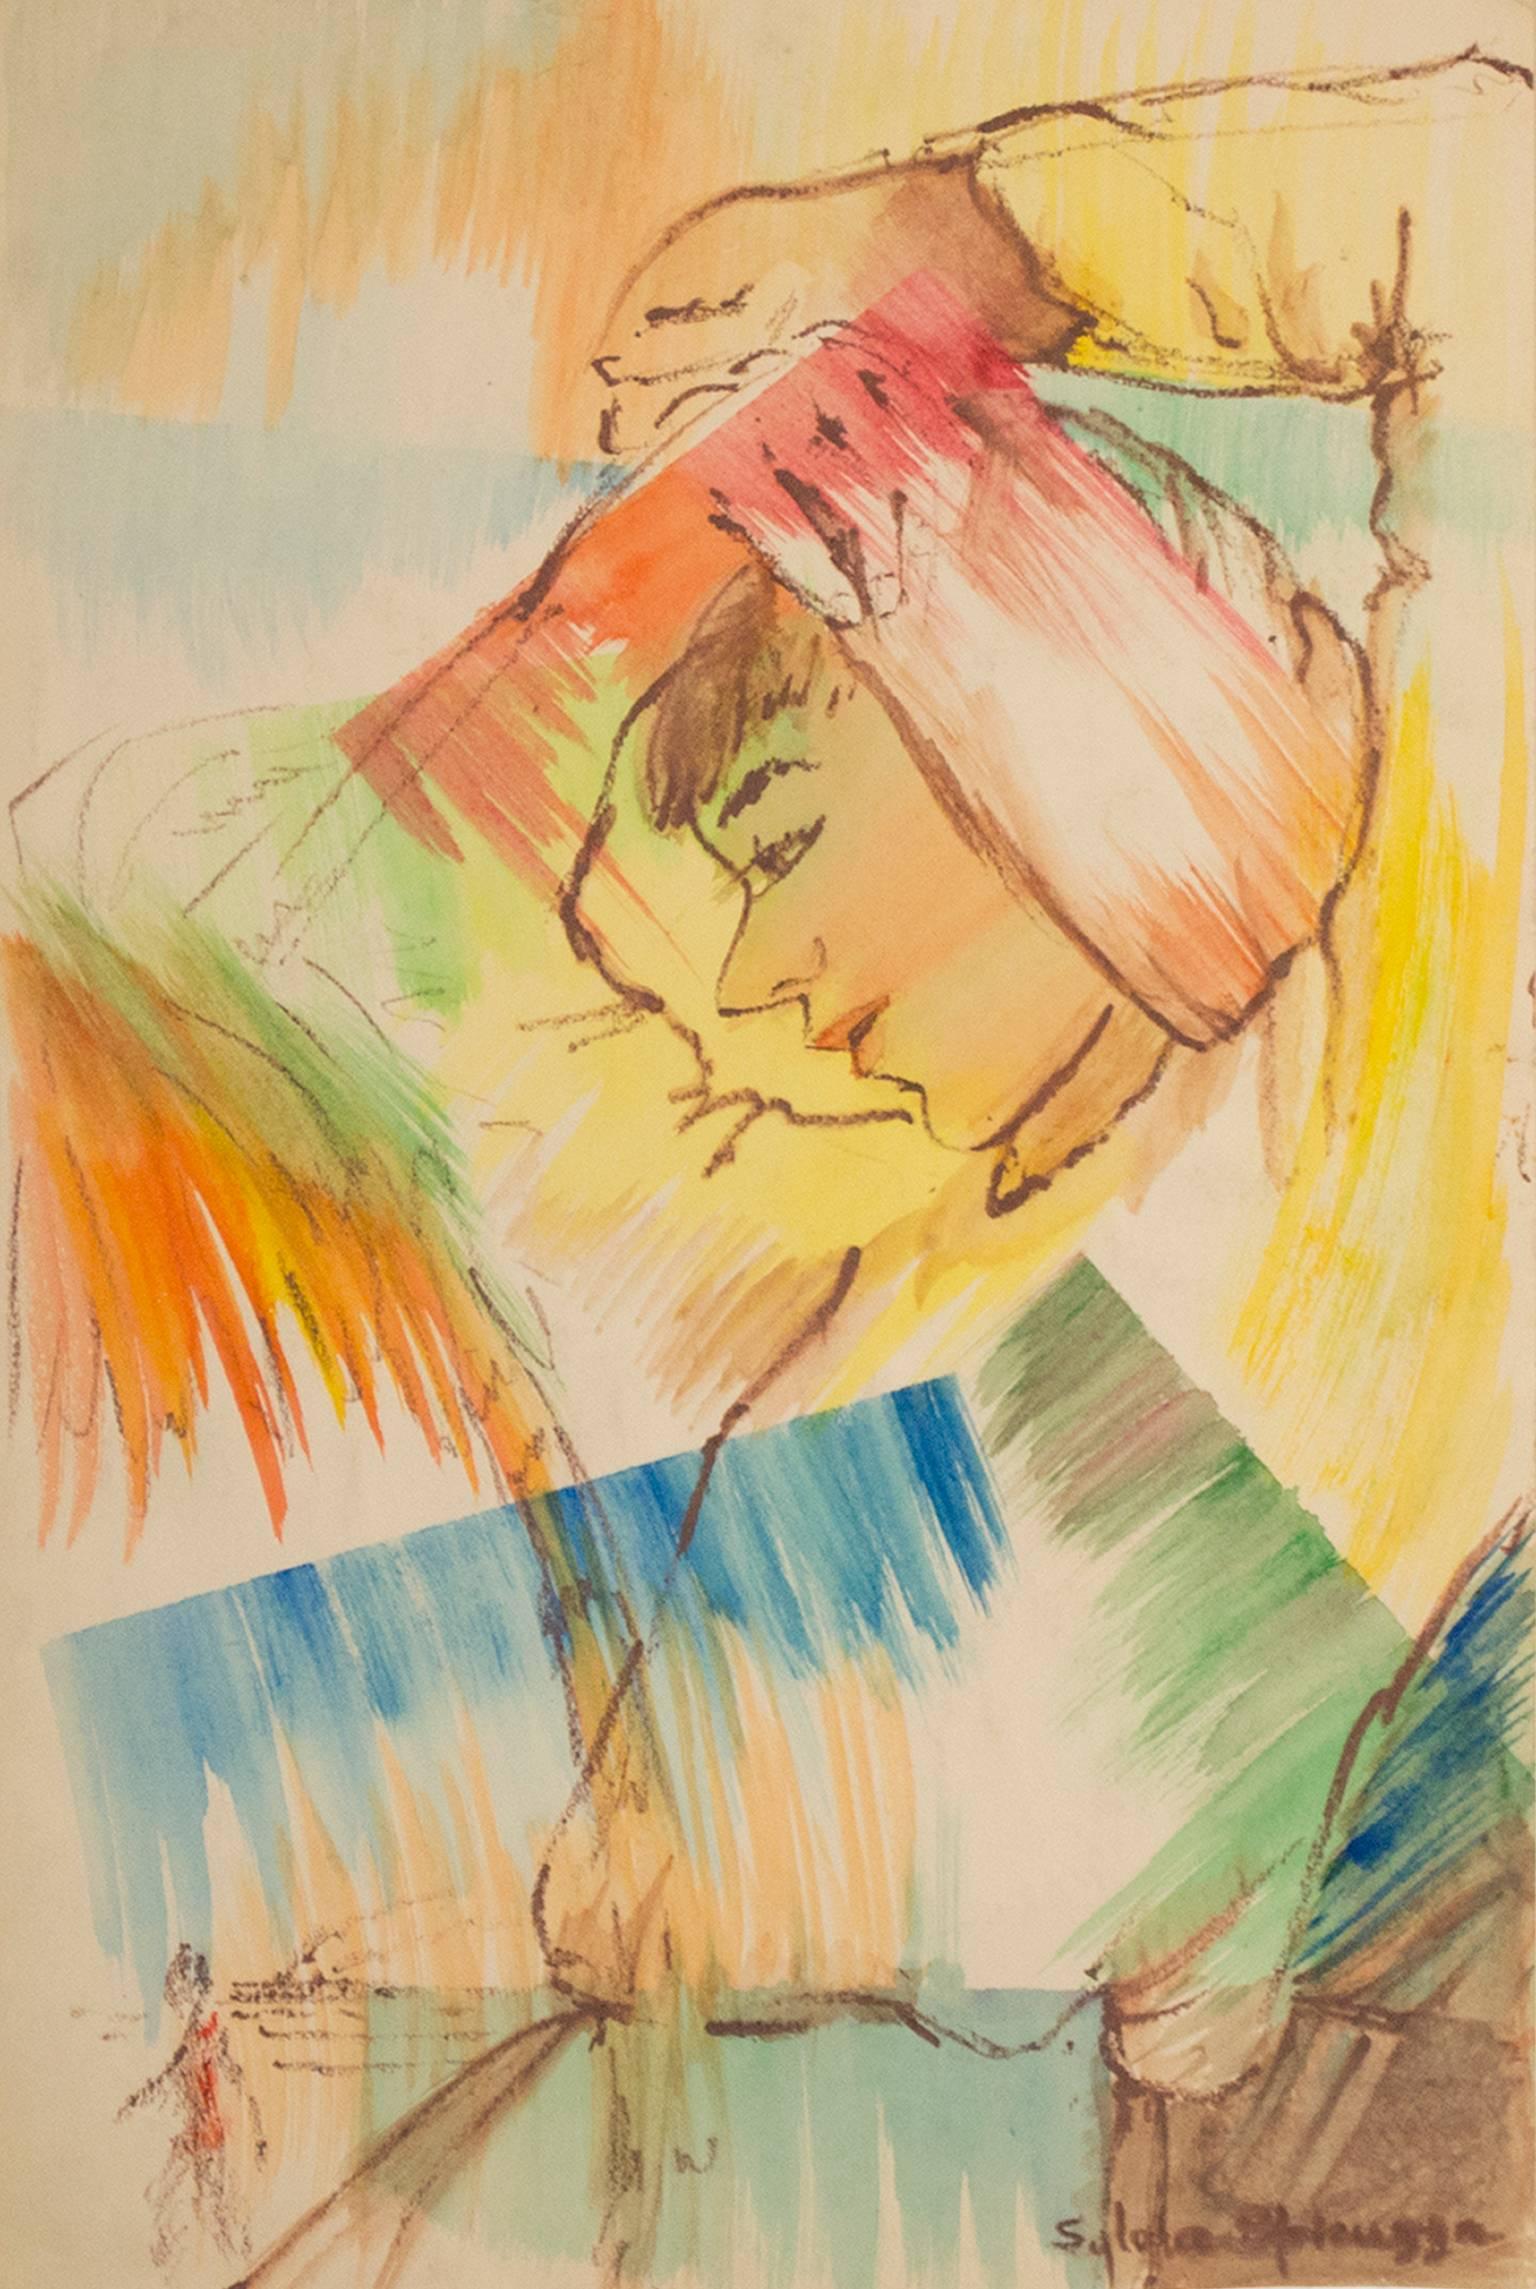 "Dreaming of Paradise Island" ist ein Original-Aquarell und Pastell auf Papier von Sylvia Spicuzza. Der Künstler hat das Werk unten rechts signiert. Es zeigt eine große weibliche Figur, die auf eine kleinere Palme und eine winzige Figur blickt.